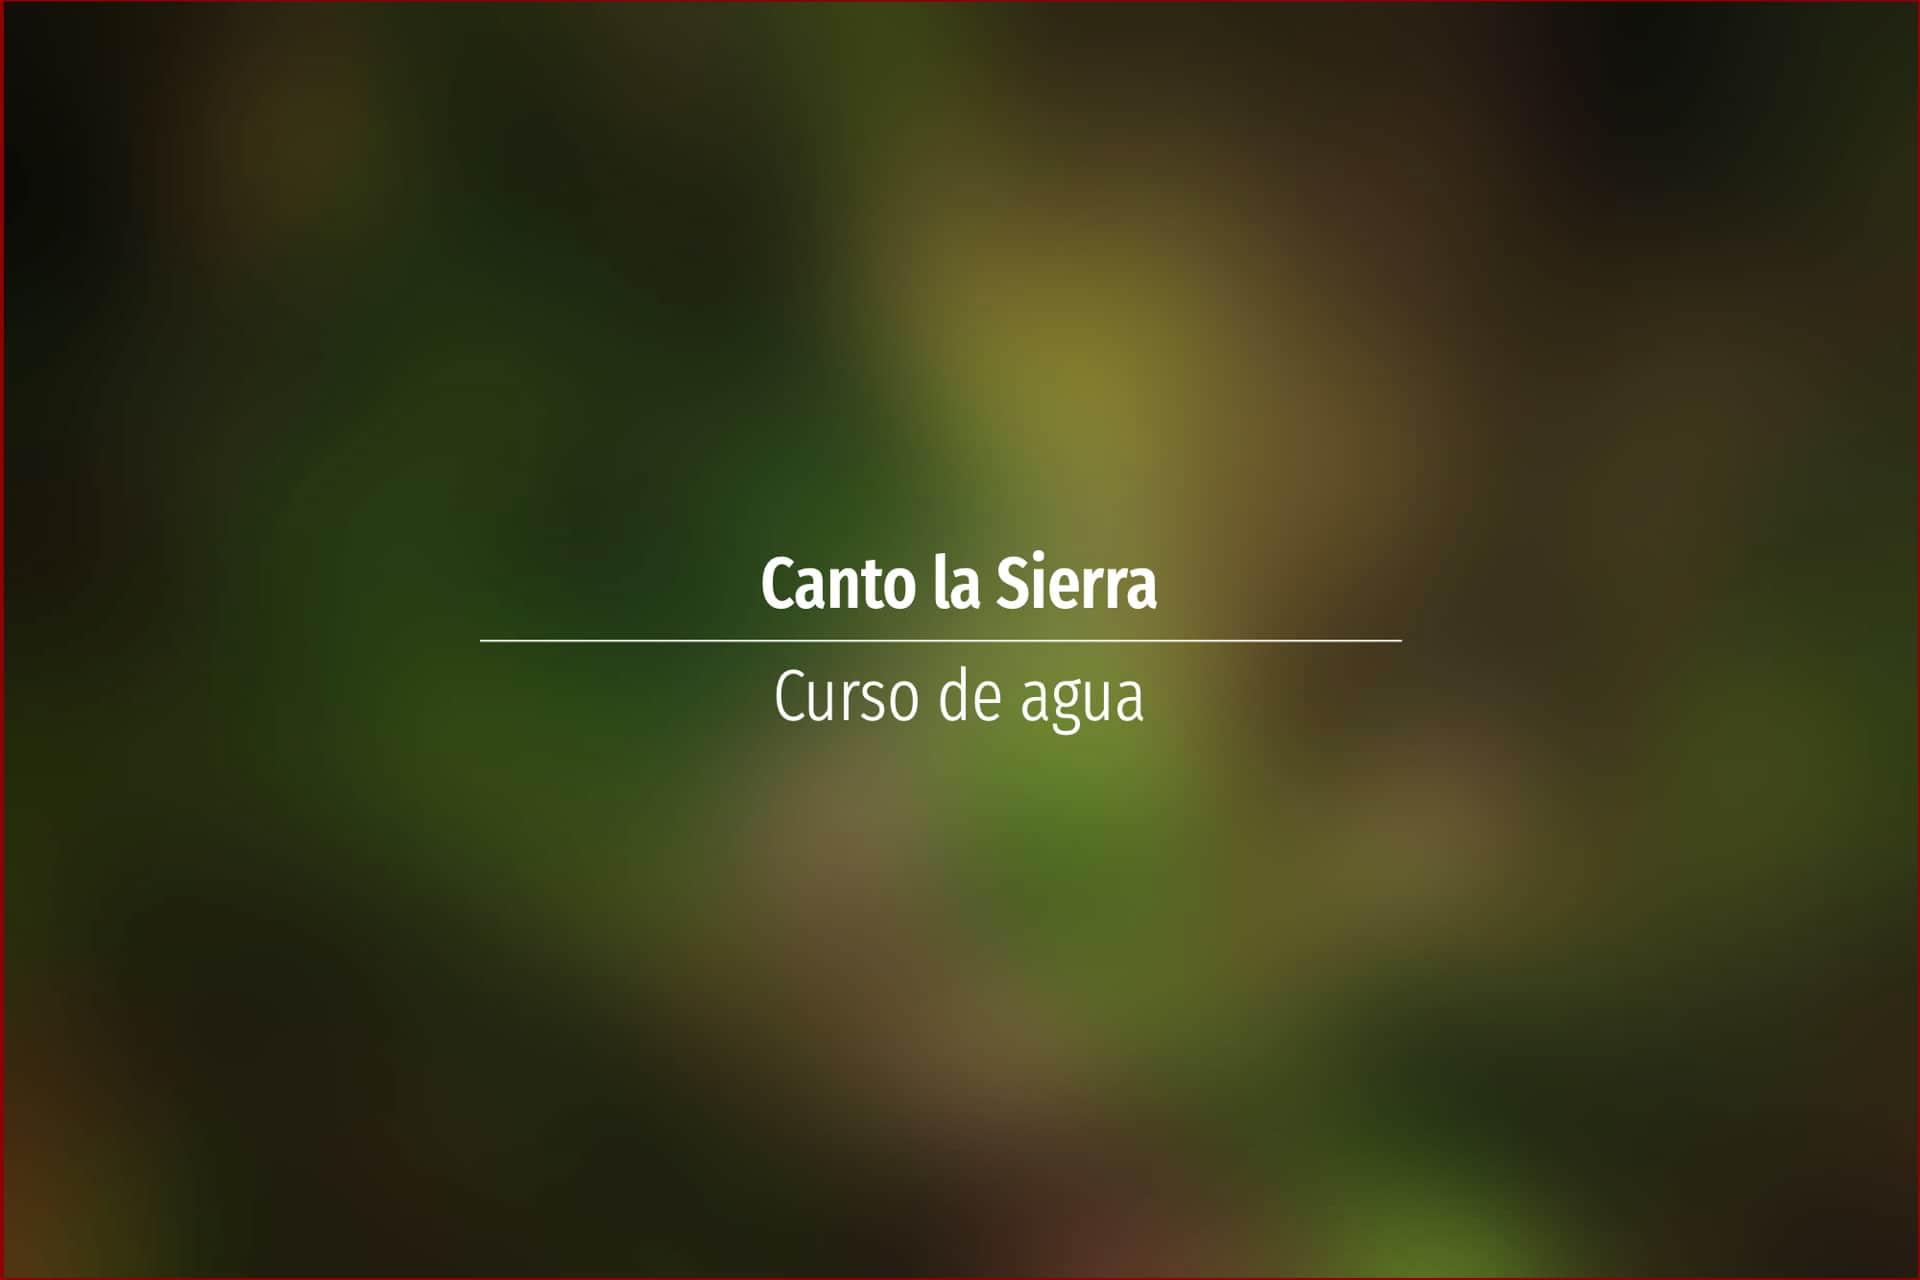 Canto la Sierra